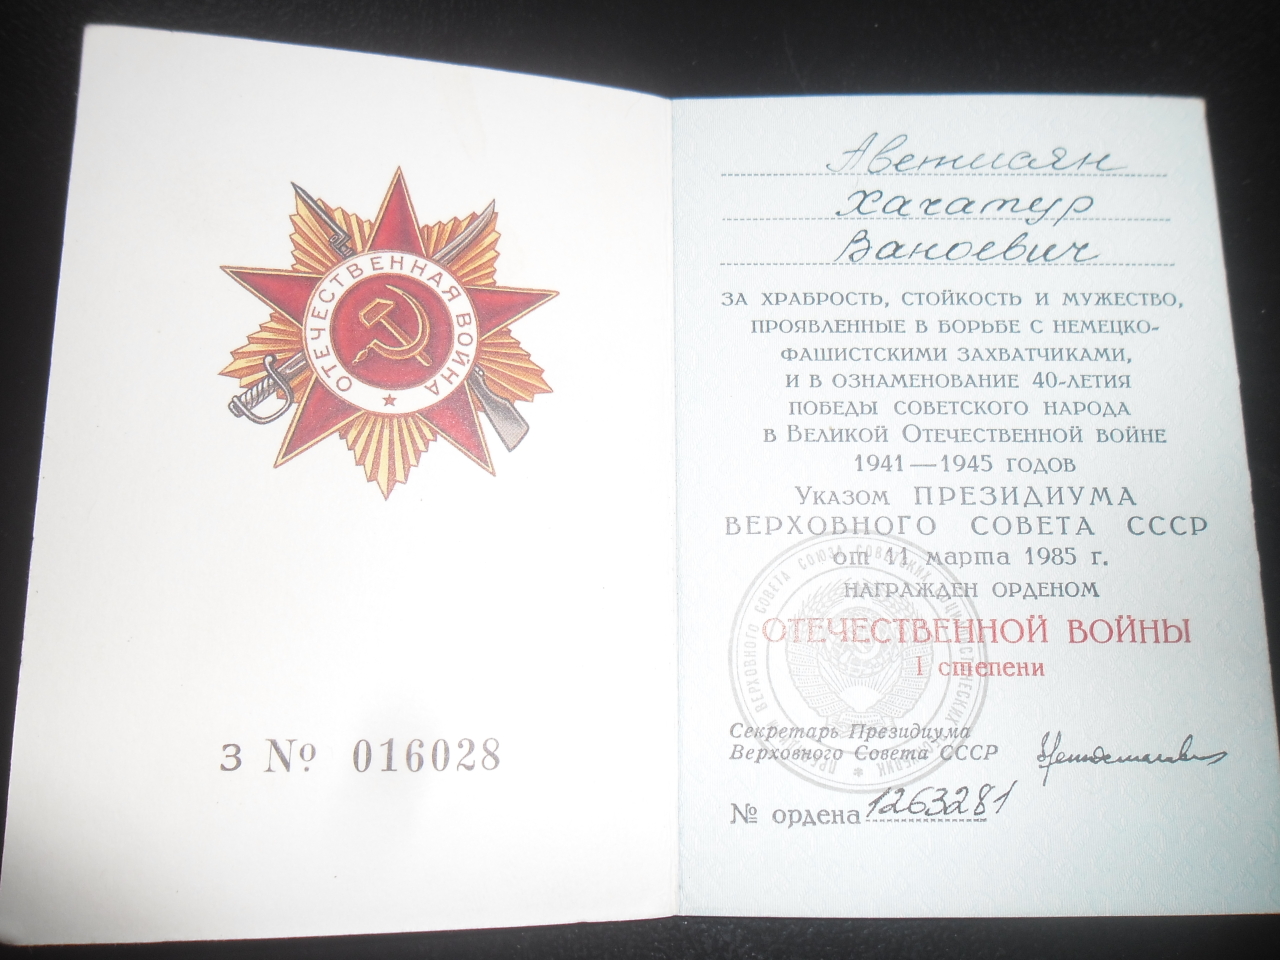 Շքանշանի գրքույկ՝ Խաչատուր Վանոյի Ավետիսյանի (Հայրենական պատերազմի մասնակից)